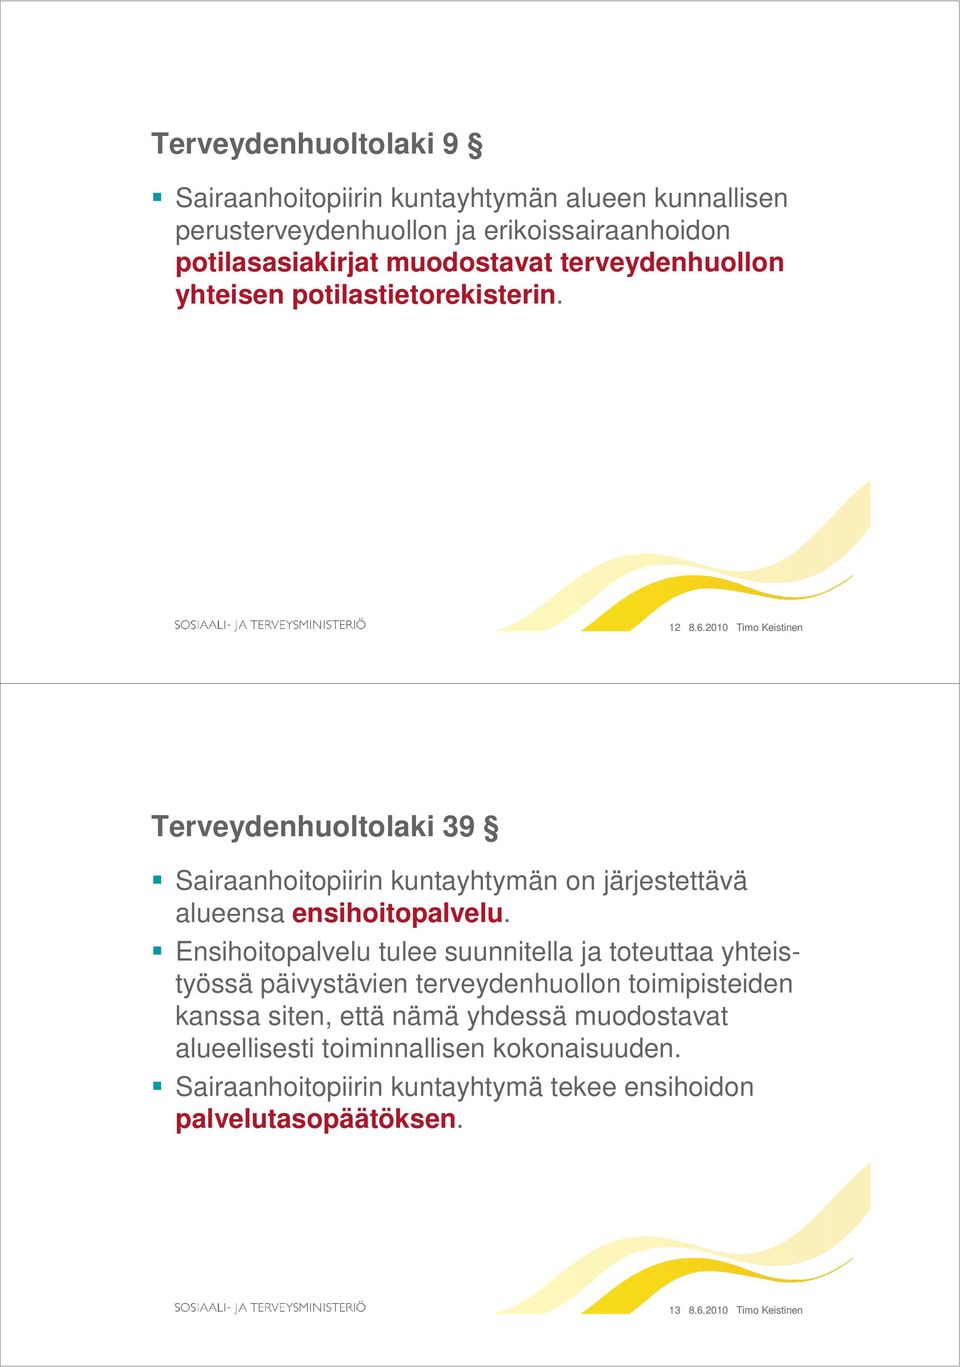 2010 Timo Keistinen Terveydenhuoltolaki 39 Sairaanhoitopiirin kuntayhtymän on järjestettävä alueensa ensihoitopalvelu.